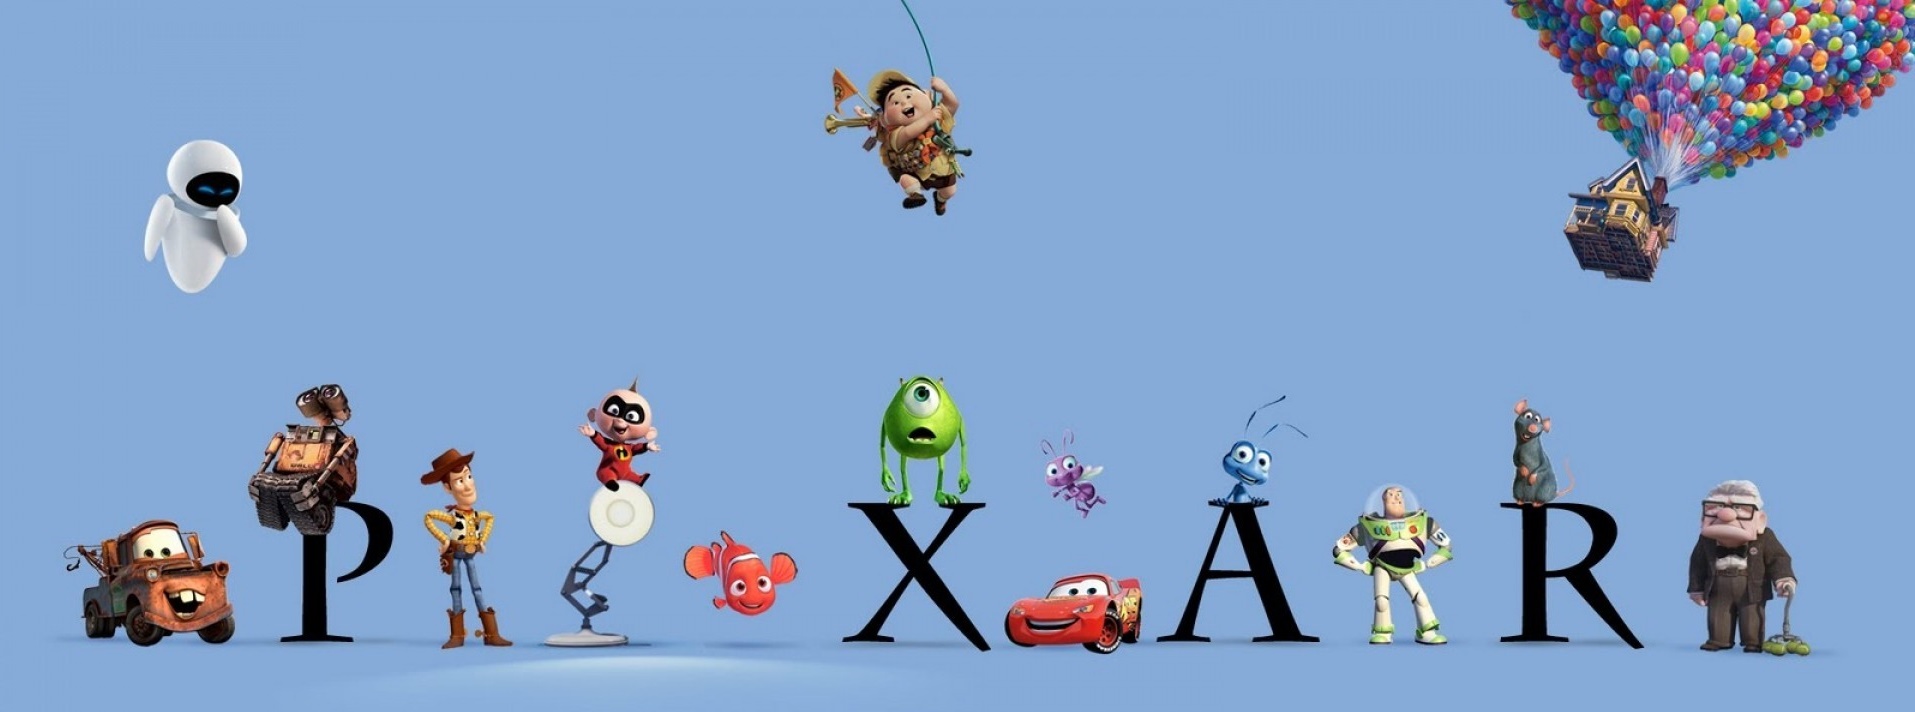 Digitalni lutkari iz Pixara: Čarobnjaci CGI animacije